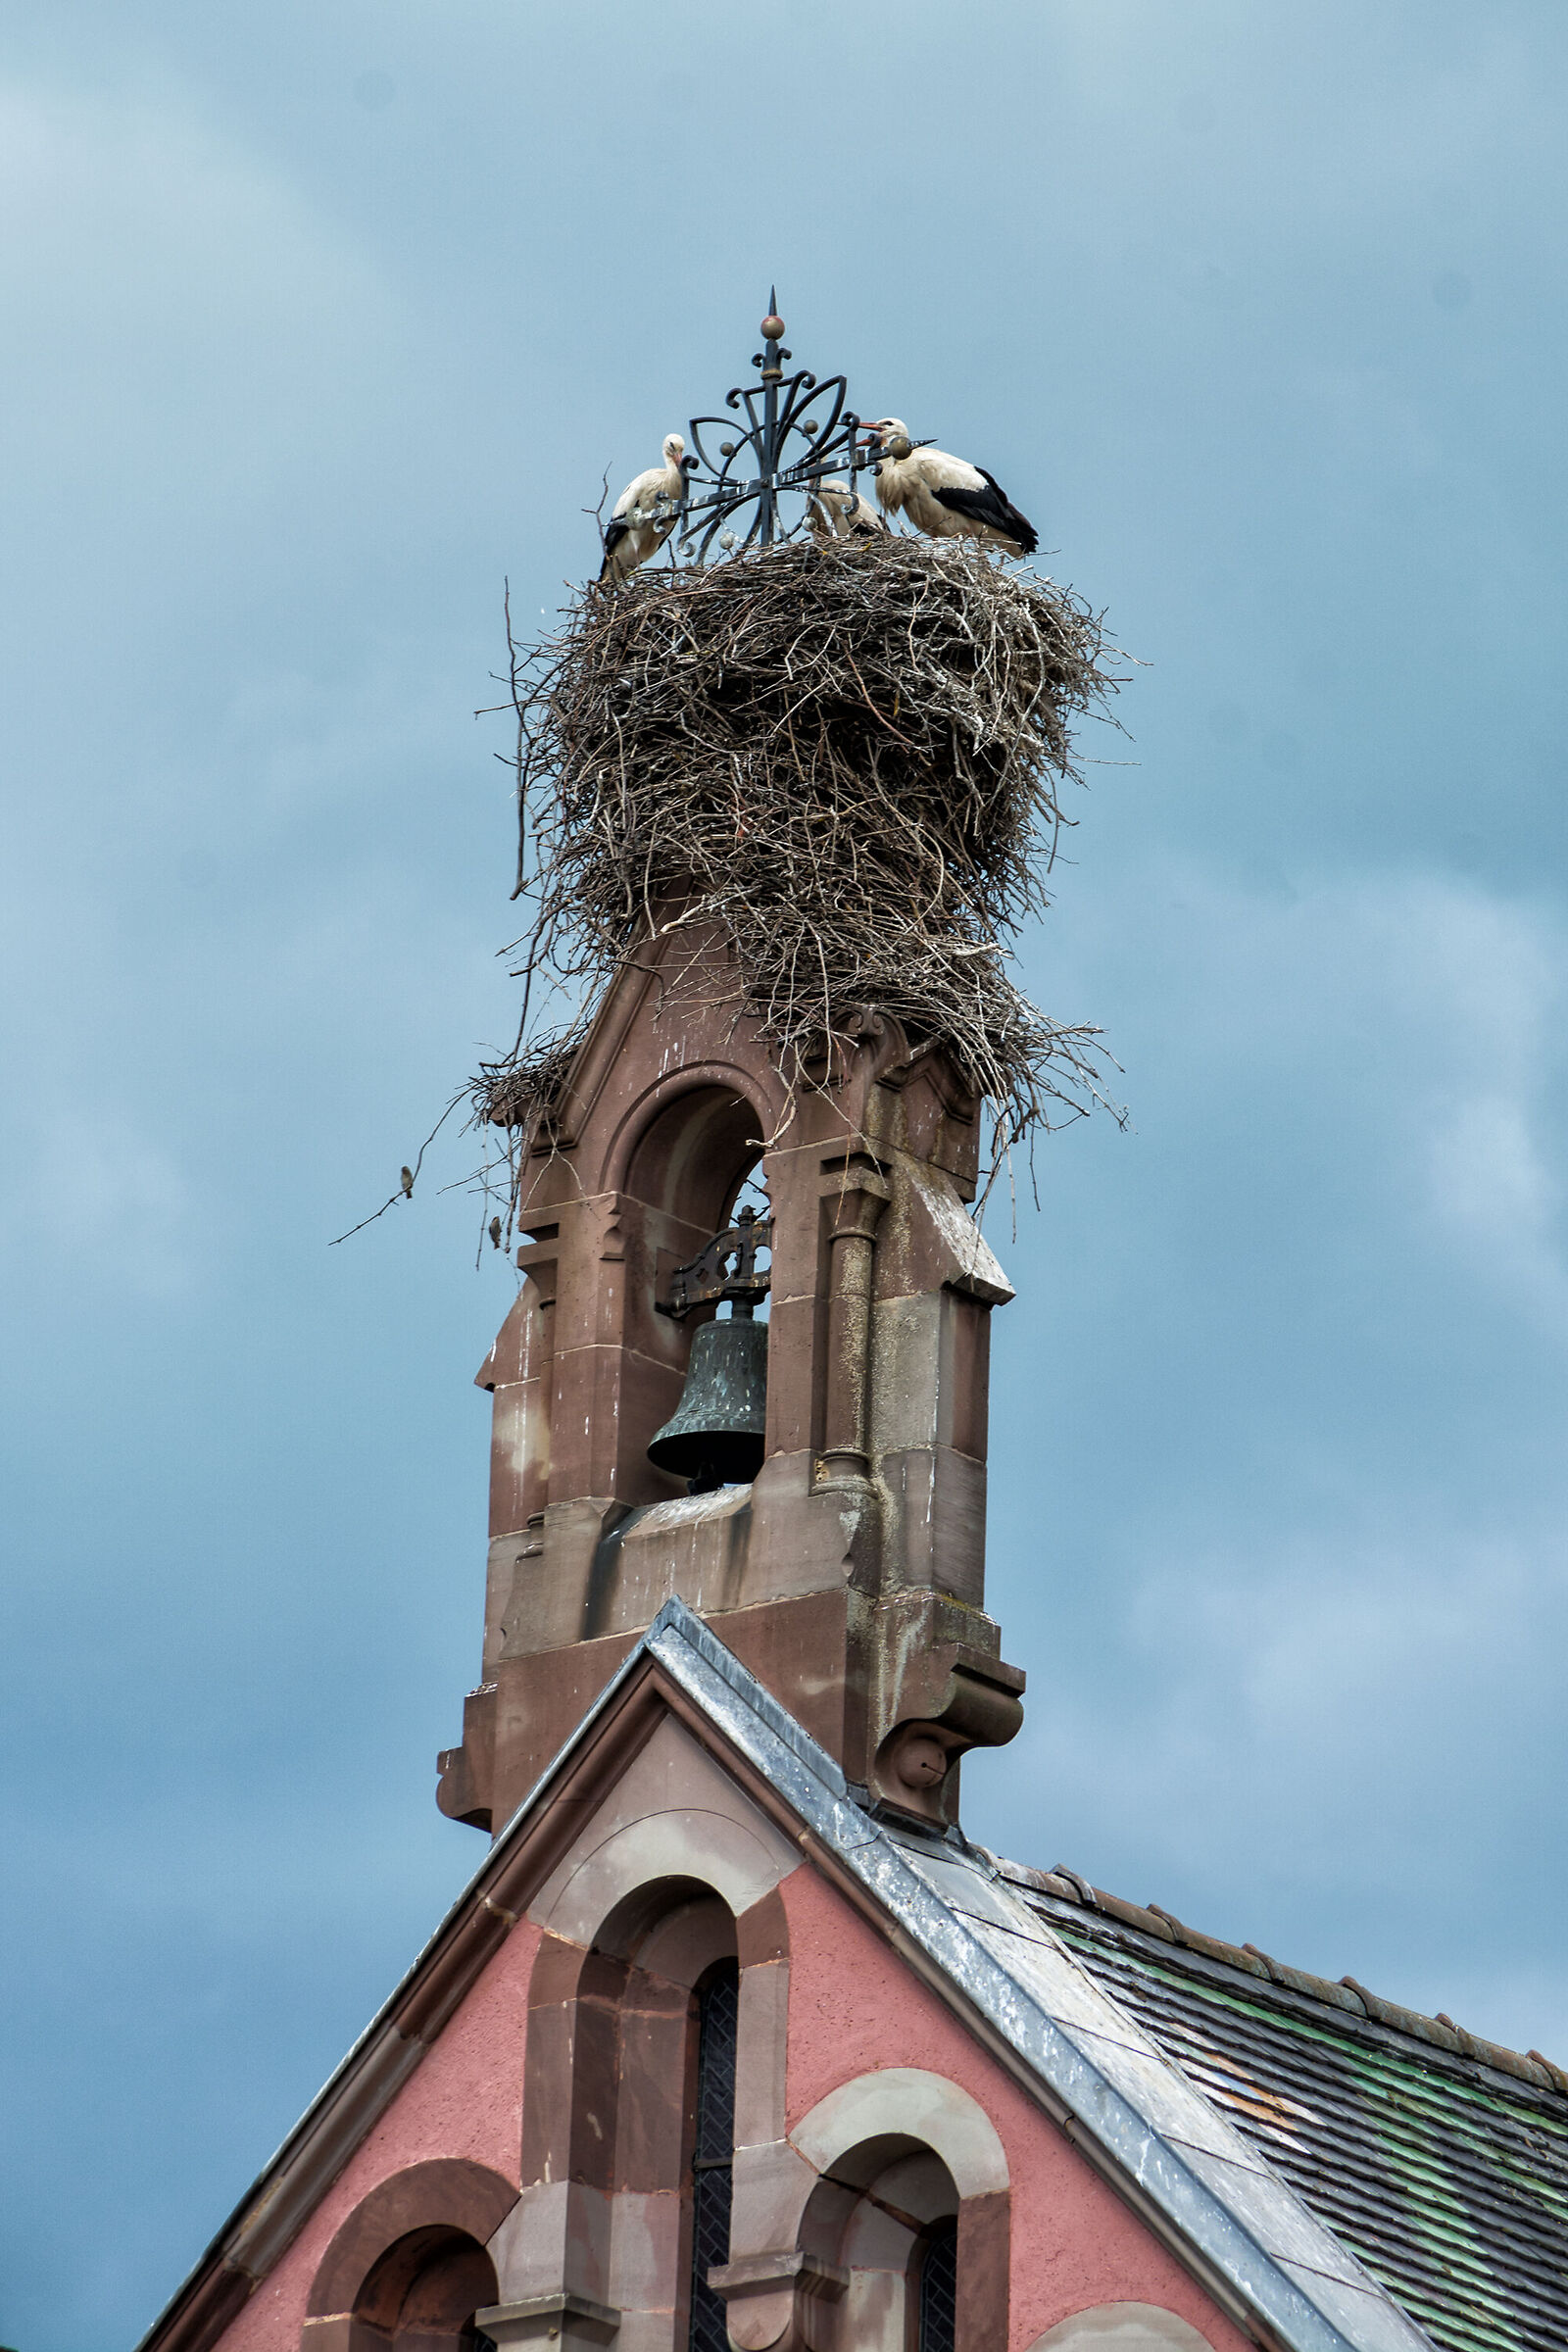 The storks' nest...